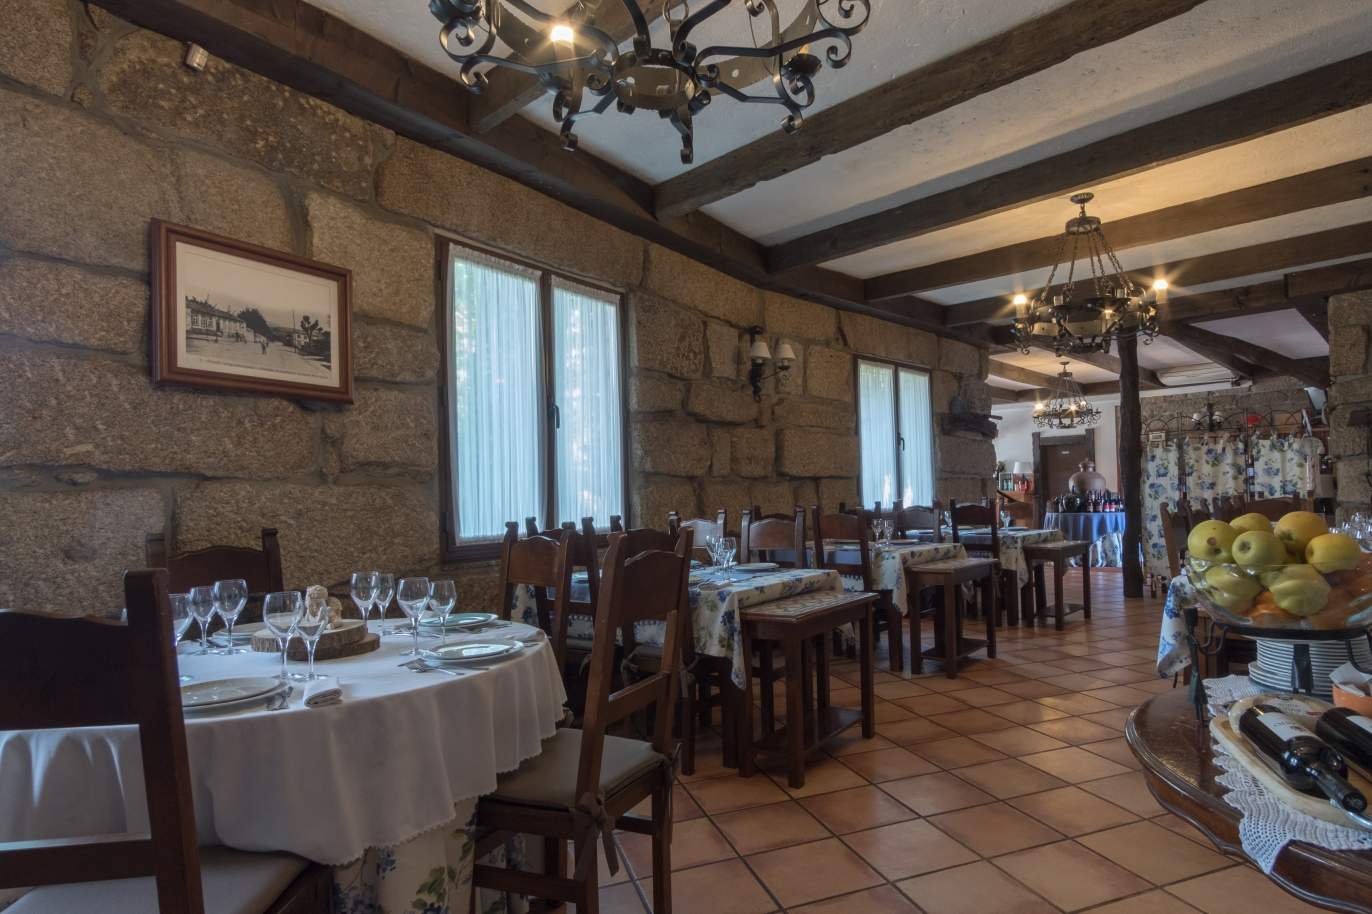 Moradia e restaurante, para venda, em Paredes_111431